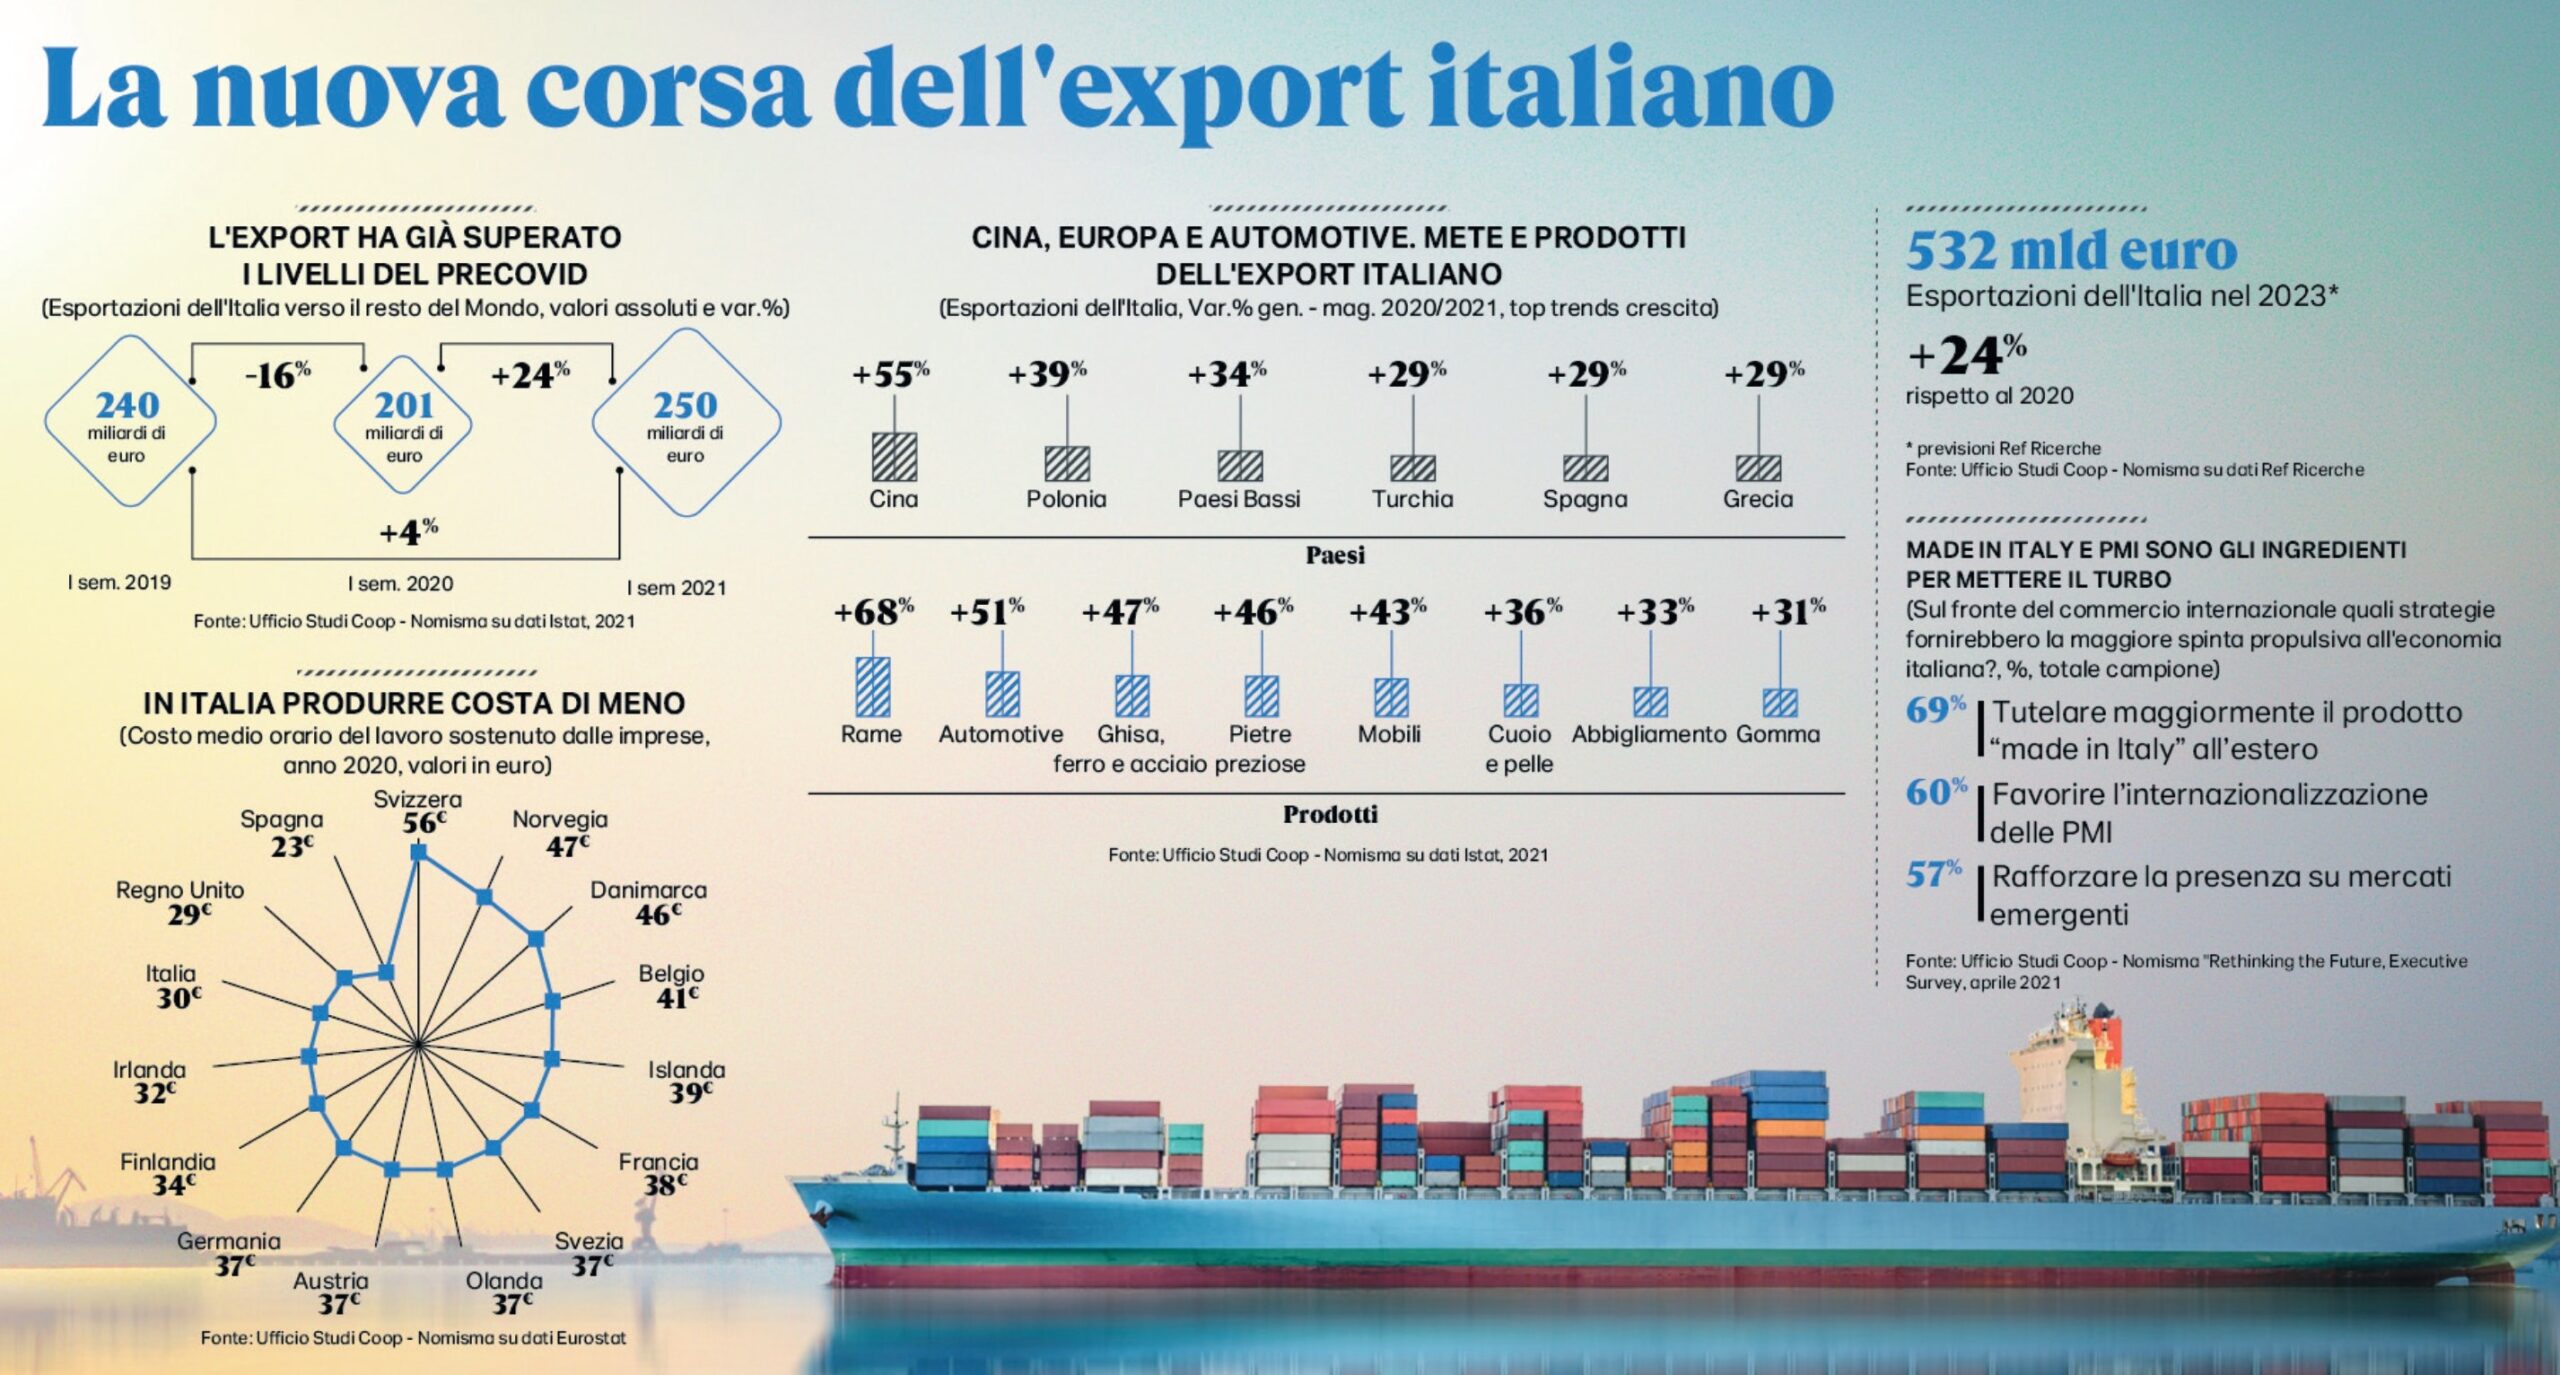 Rapporto Coop 2021: l’Italia cresce e torna in fiducia, vola l’export anche se è allarme per il costo delle materie prime alle stelle